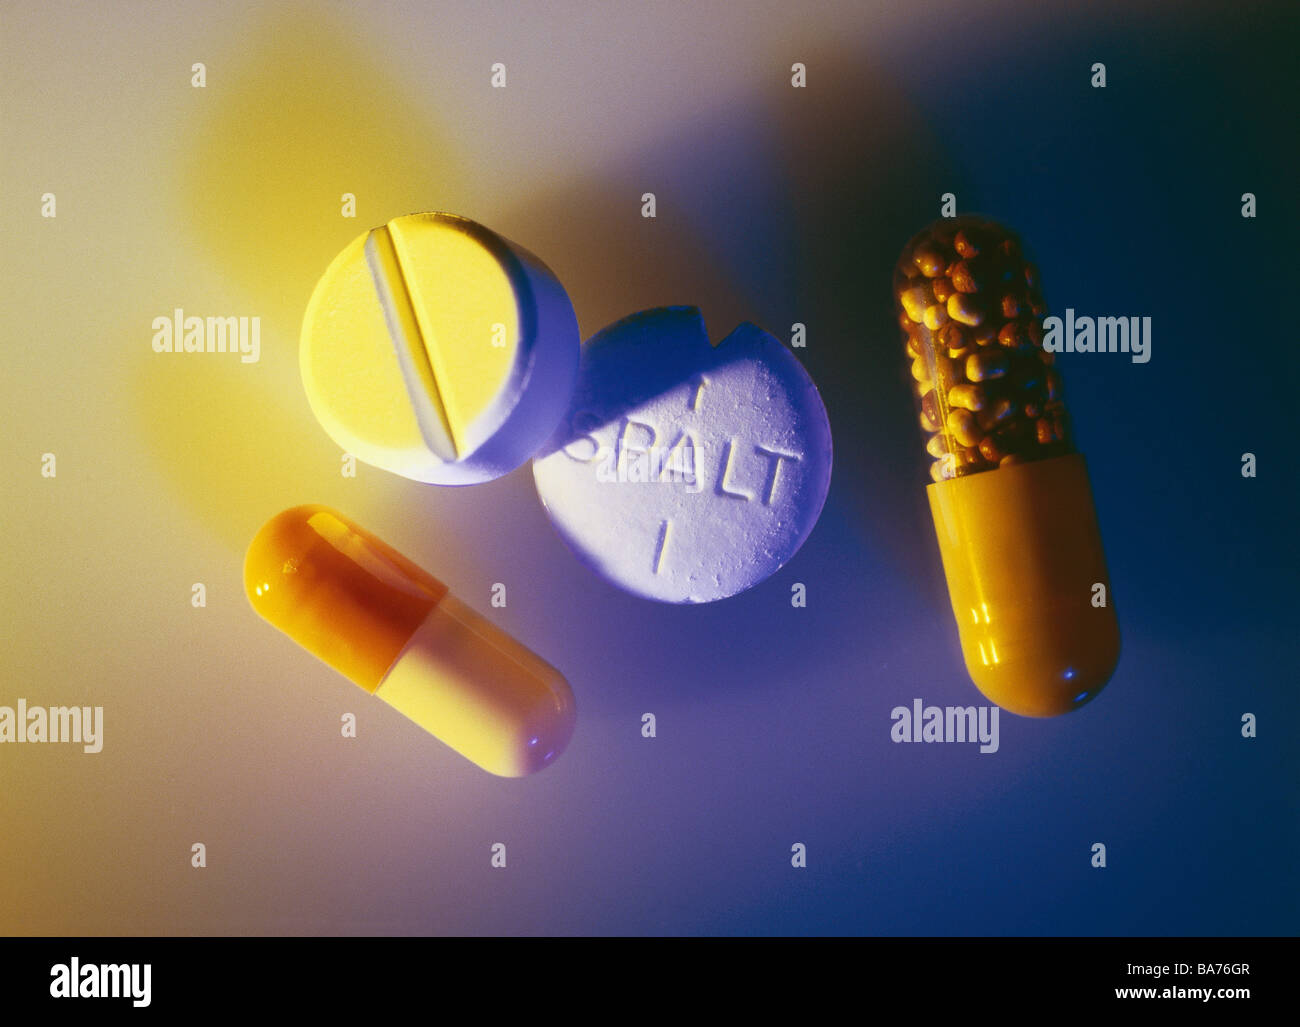 Pillole di farmaci analgesici capsule tranquillamente la medicina della vita pubblica salute salute malattia simbolo del farmaco curare antidolorifico Foto Stock